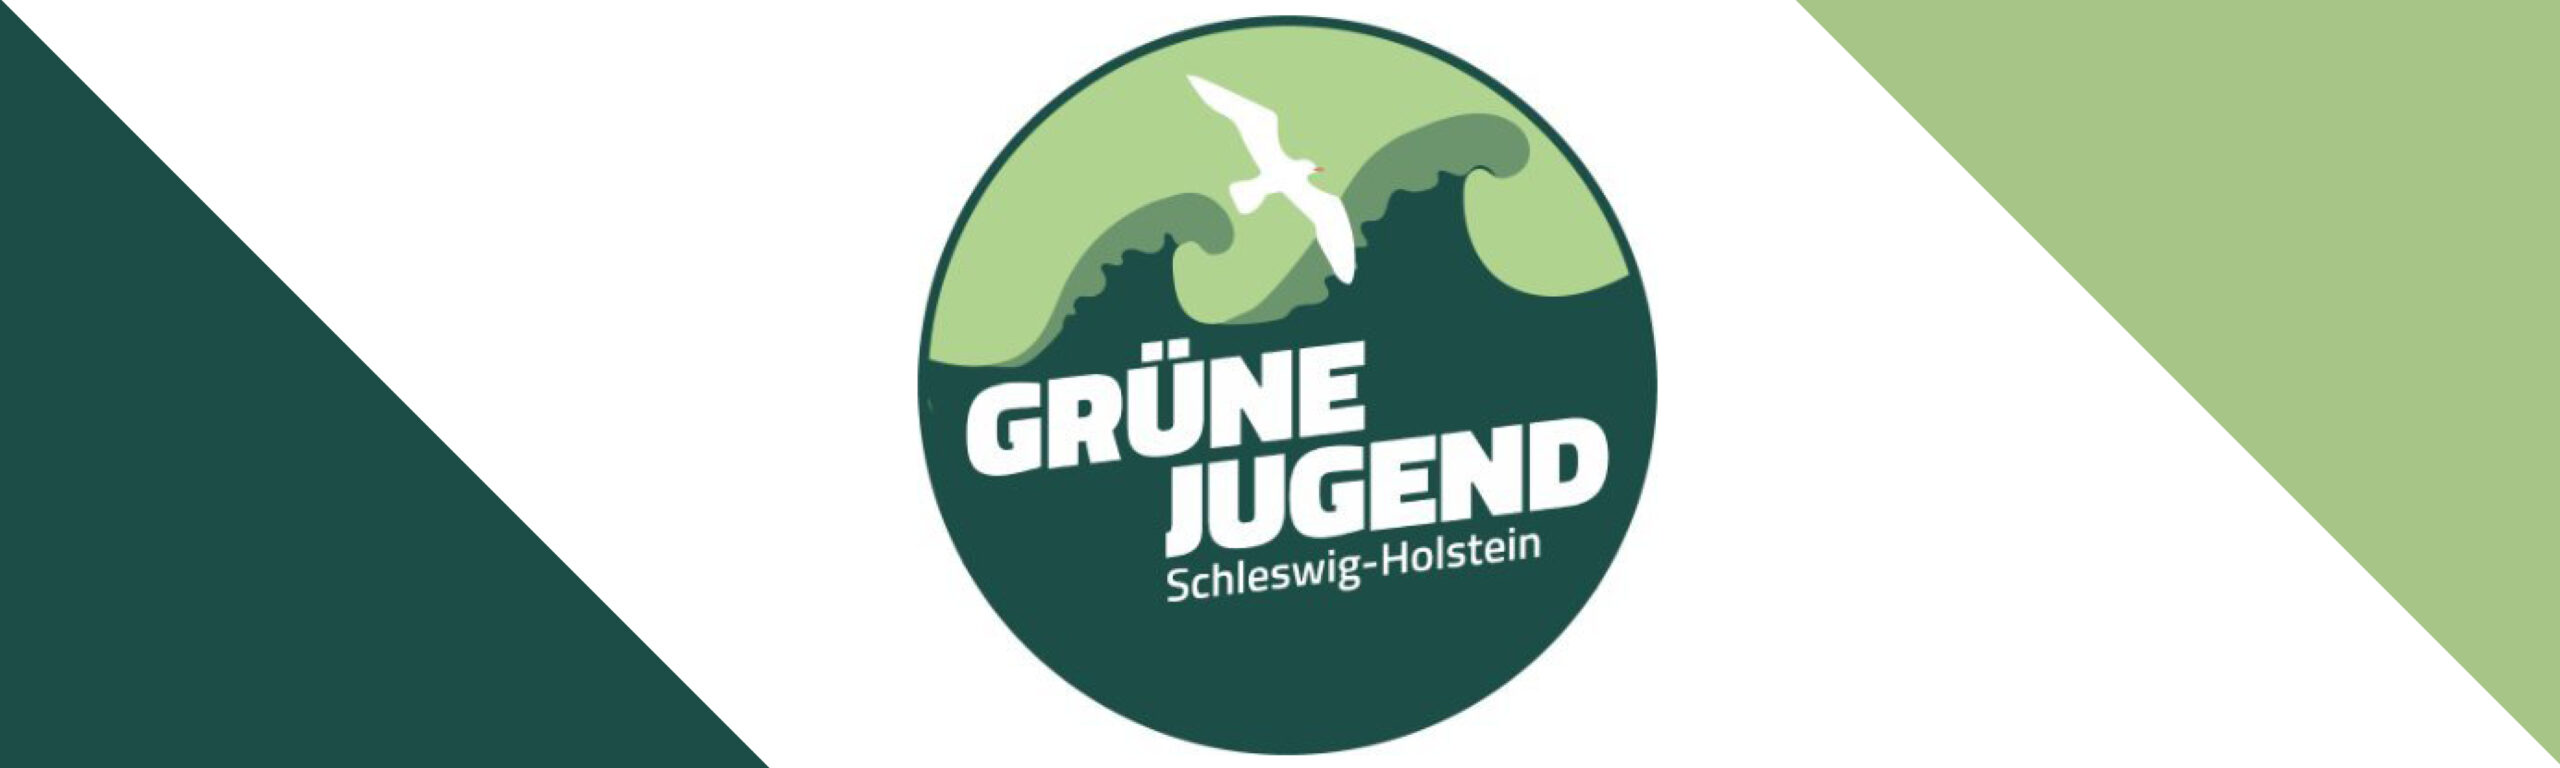 Logo der Grünen Jugend Schleswig-Holstein